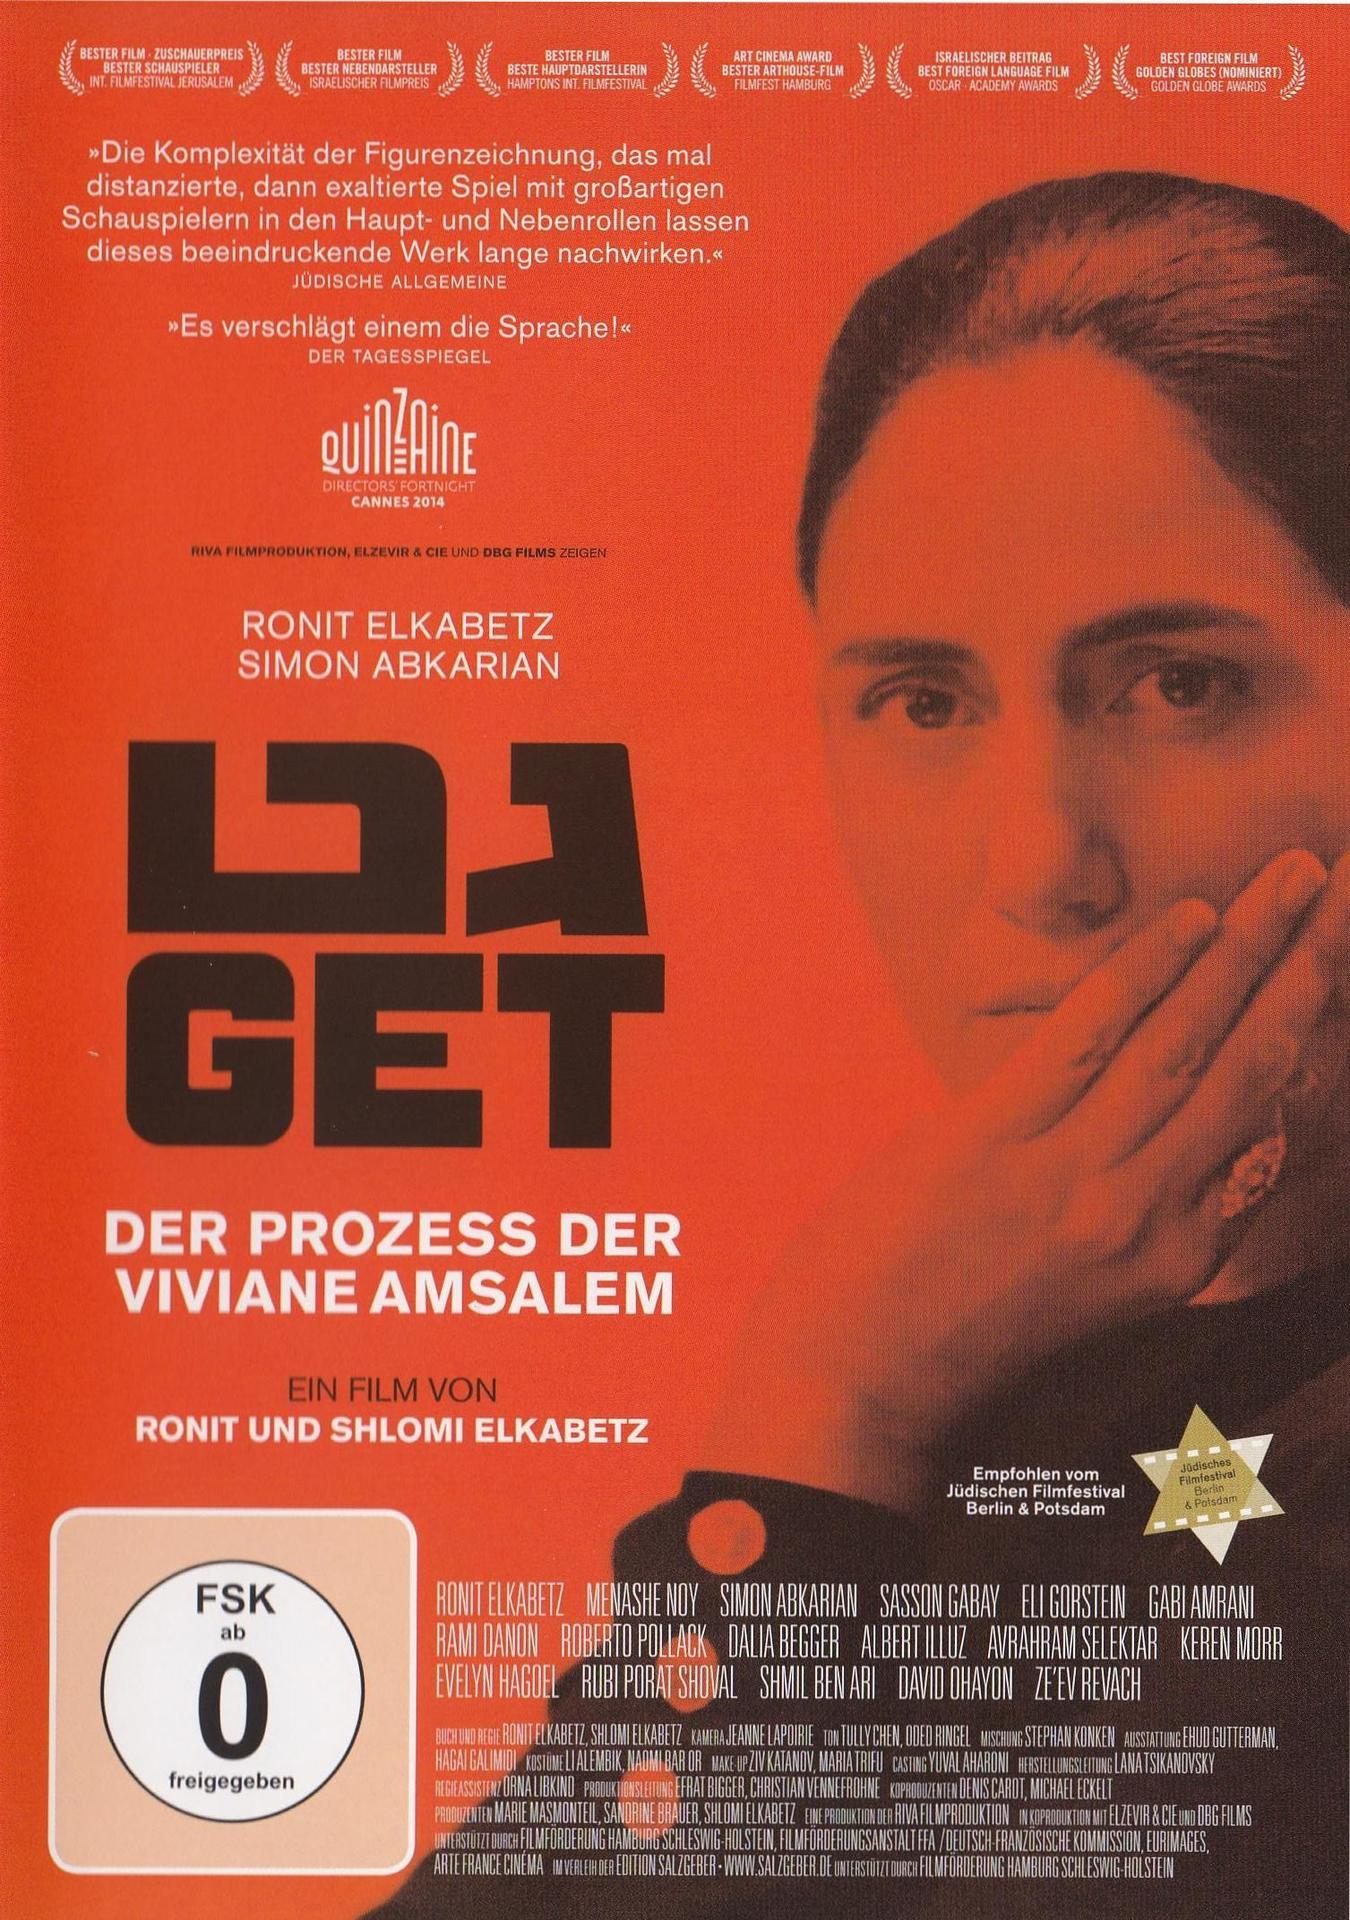 Prozess DVD Get Amsalem - der Der Viviane